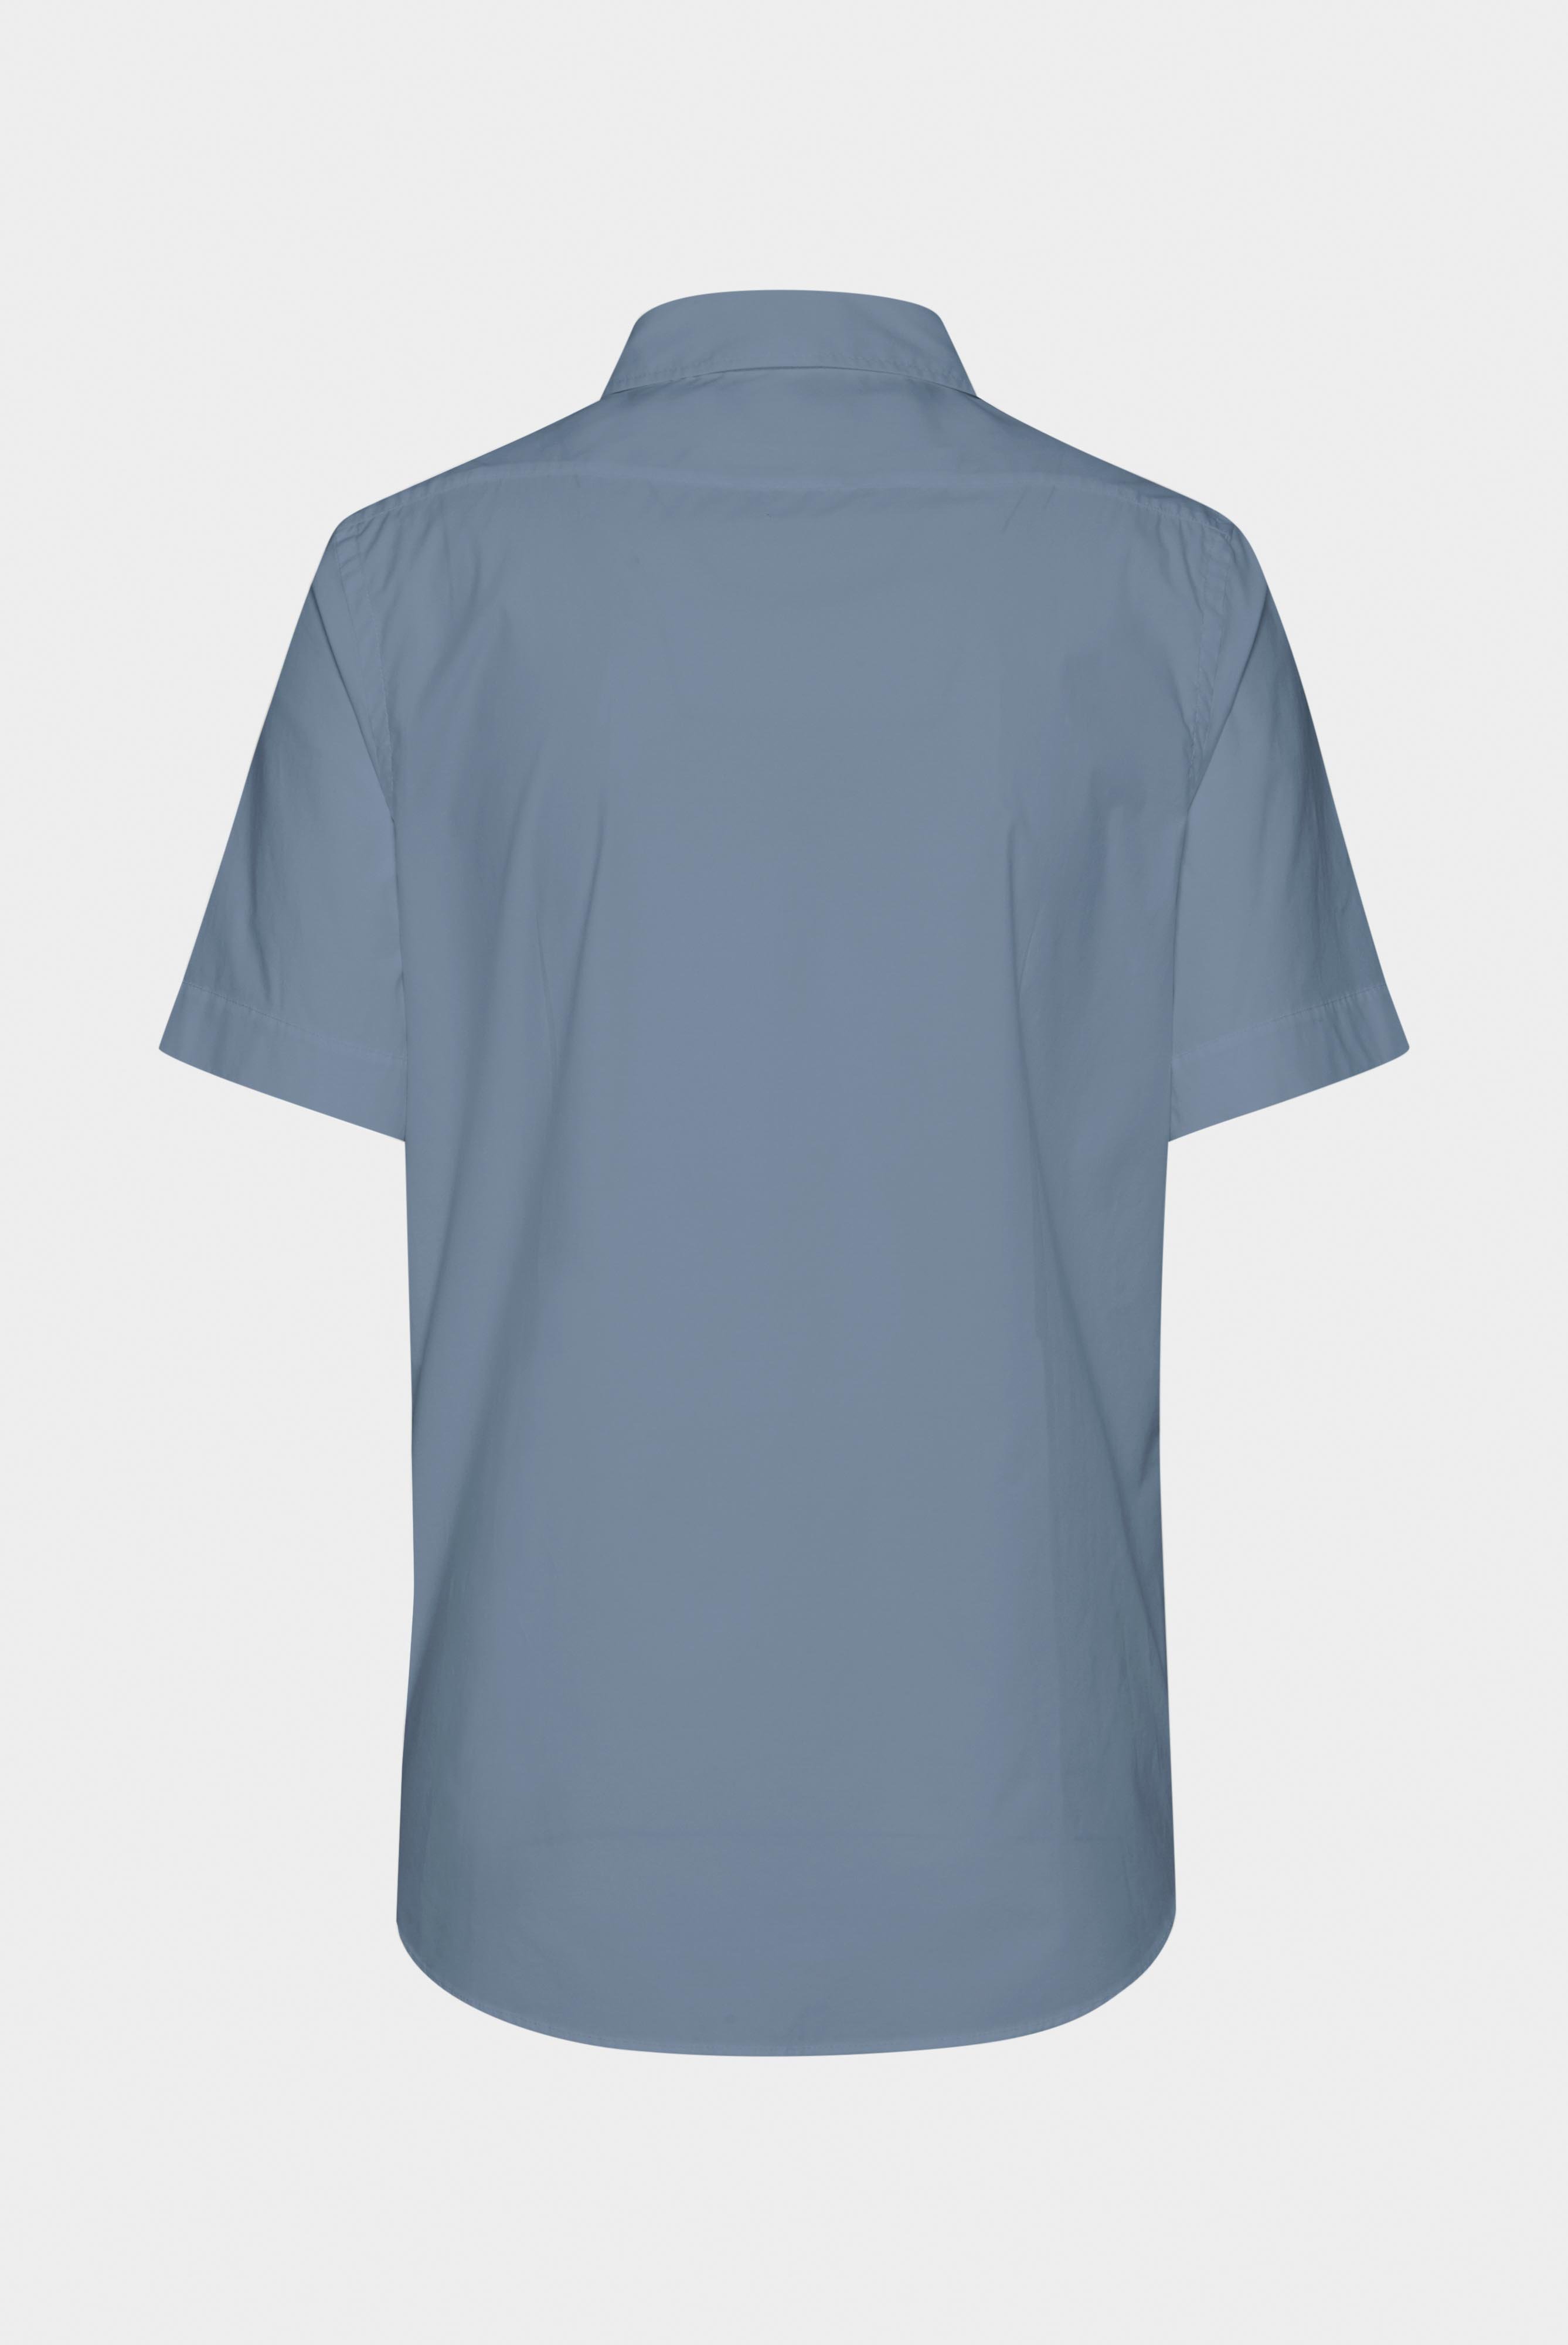 Kurzarm Hemden+Hemd aus leichter Baumwolle mit Stretch-Hemdärmeln+20.2035.Q2.H00240.000.41